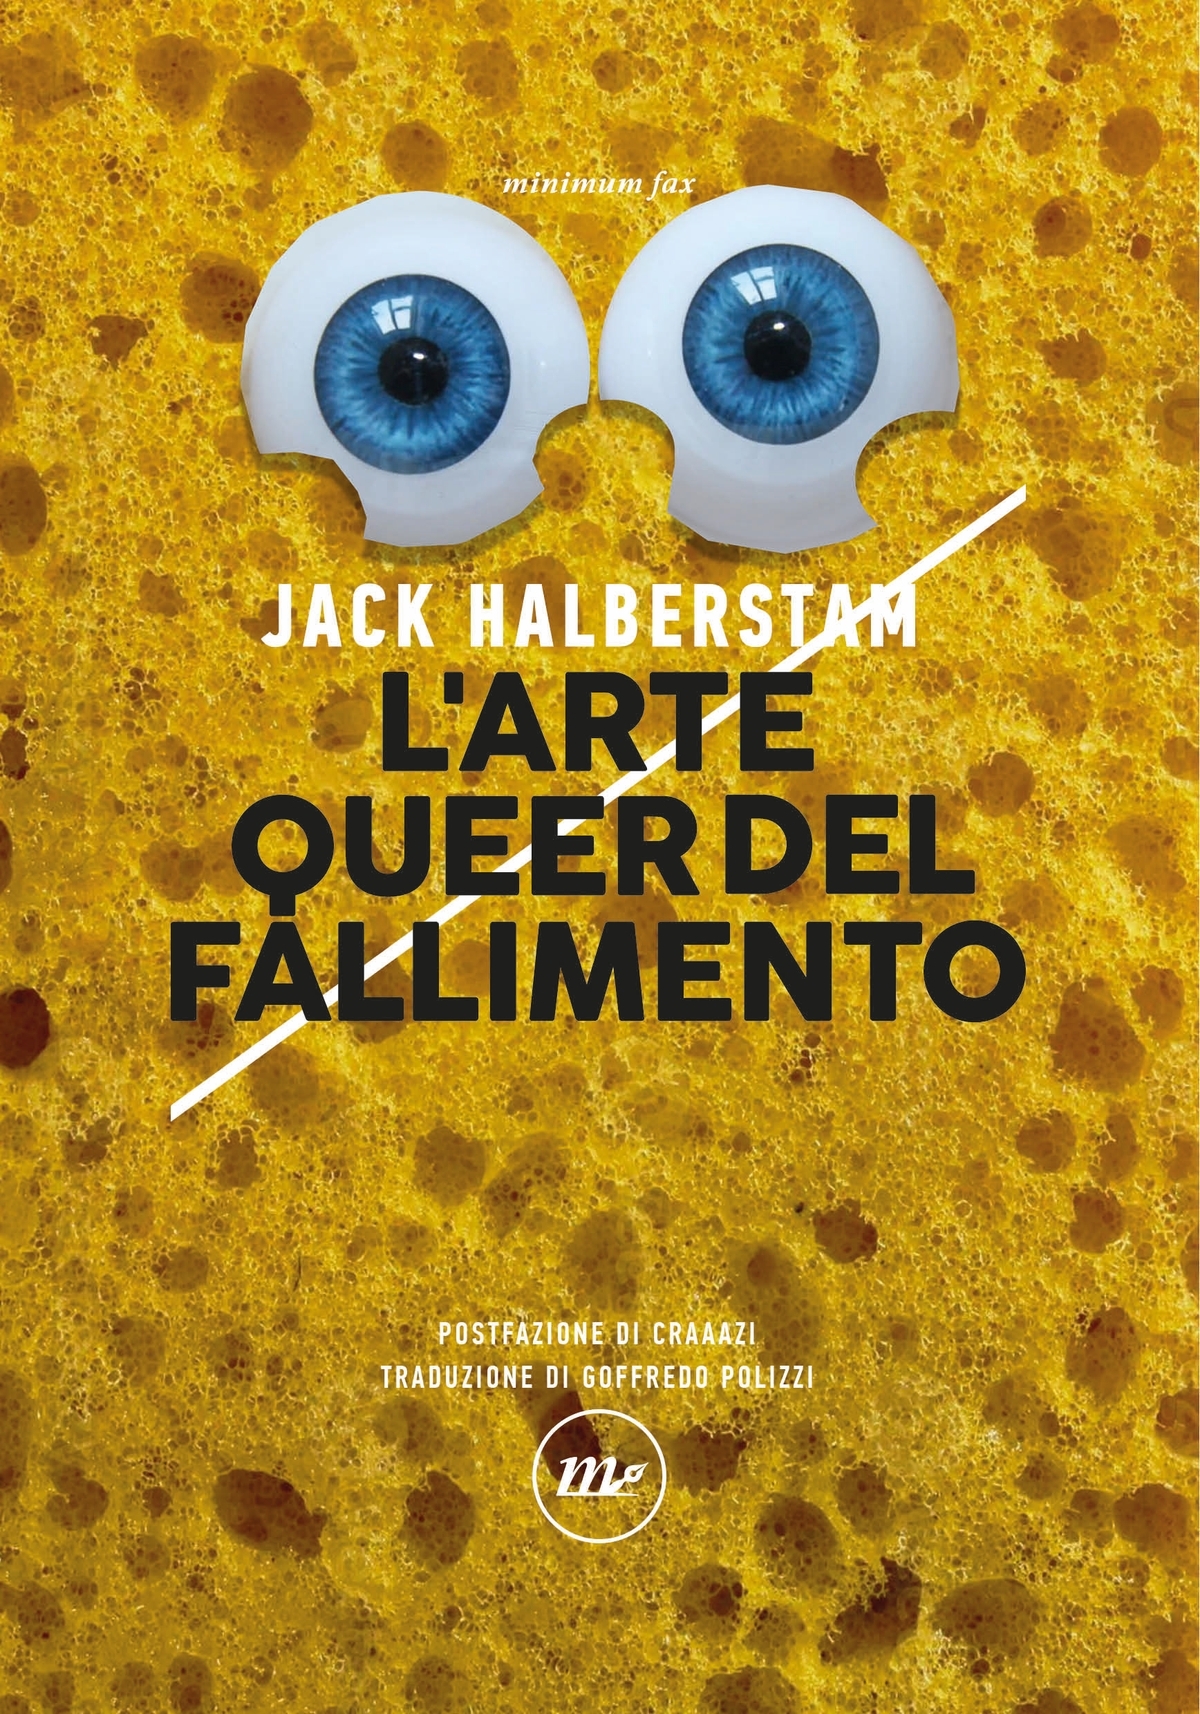 Jack Halberstam - L'arte queer del fallimento (minimum fax, Roma 2022)